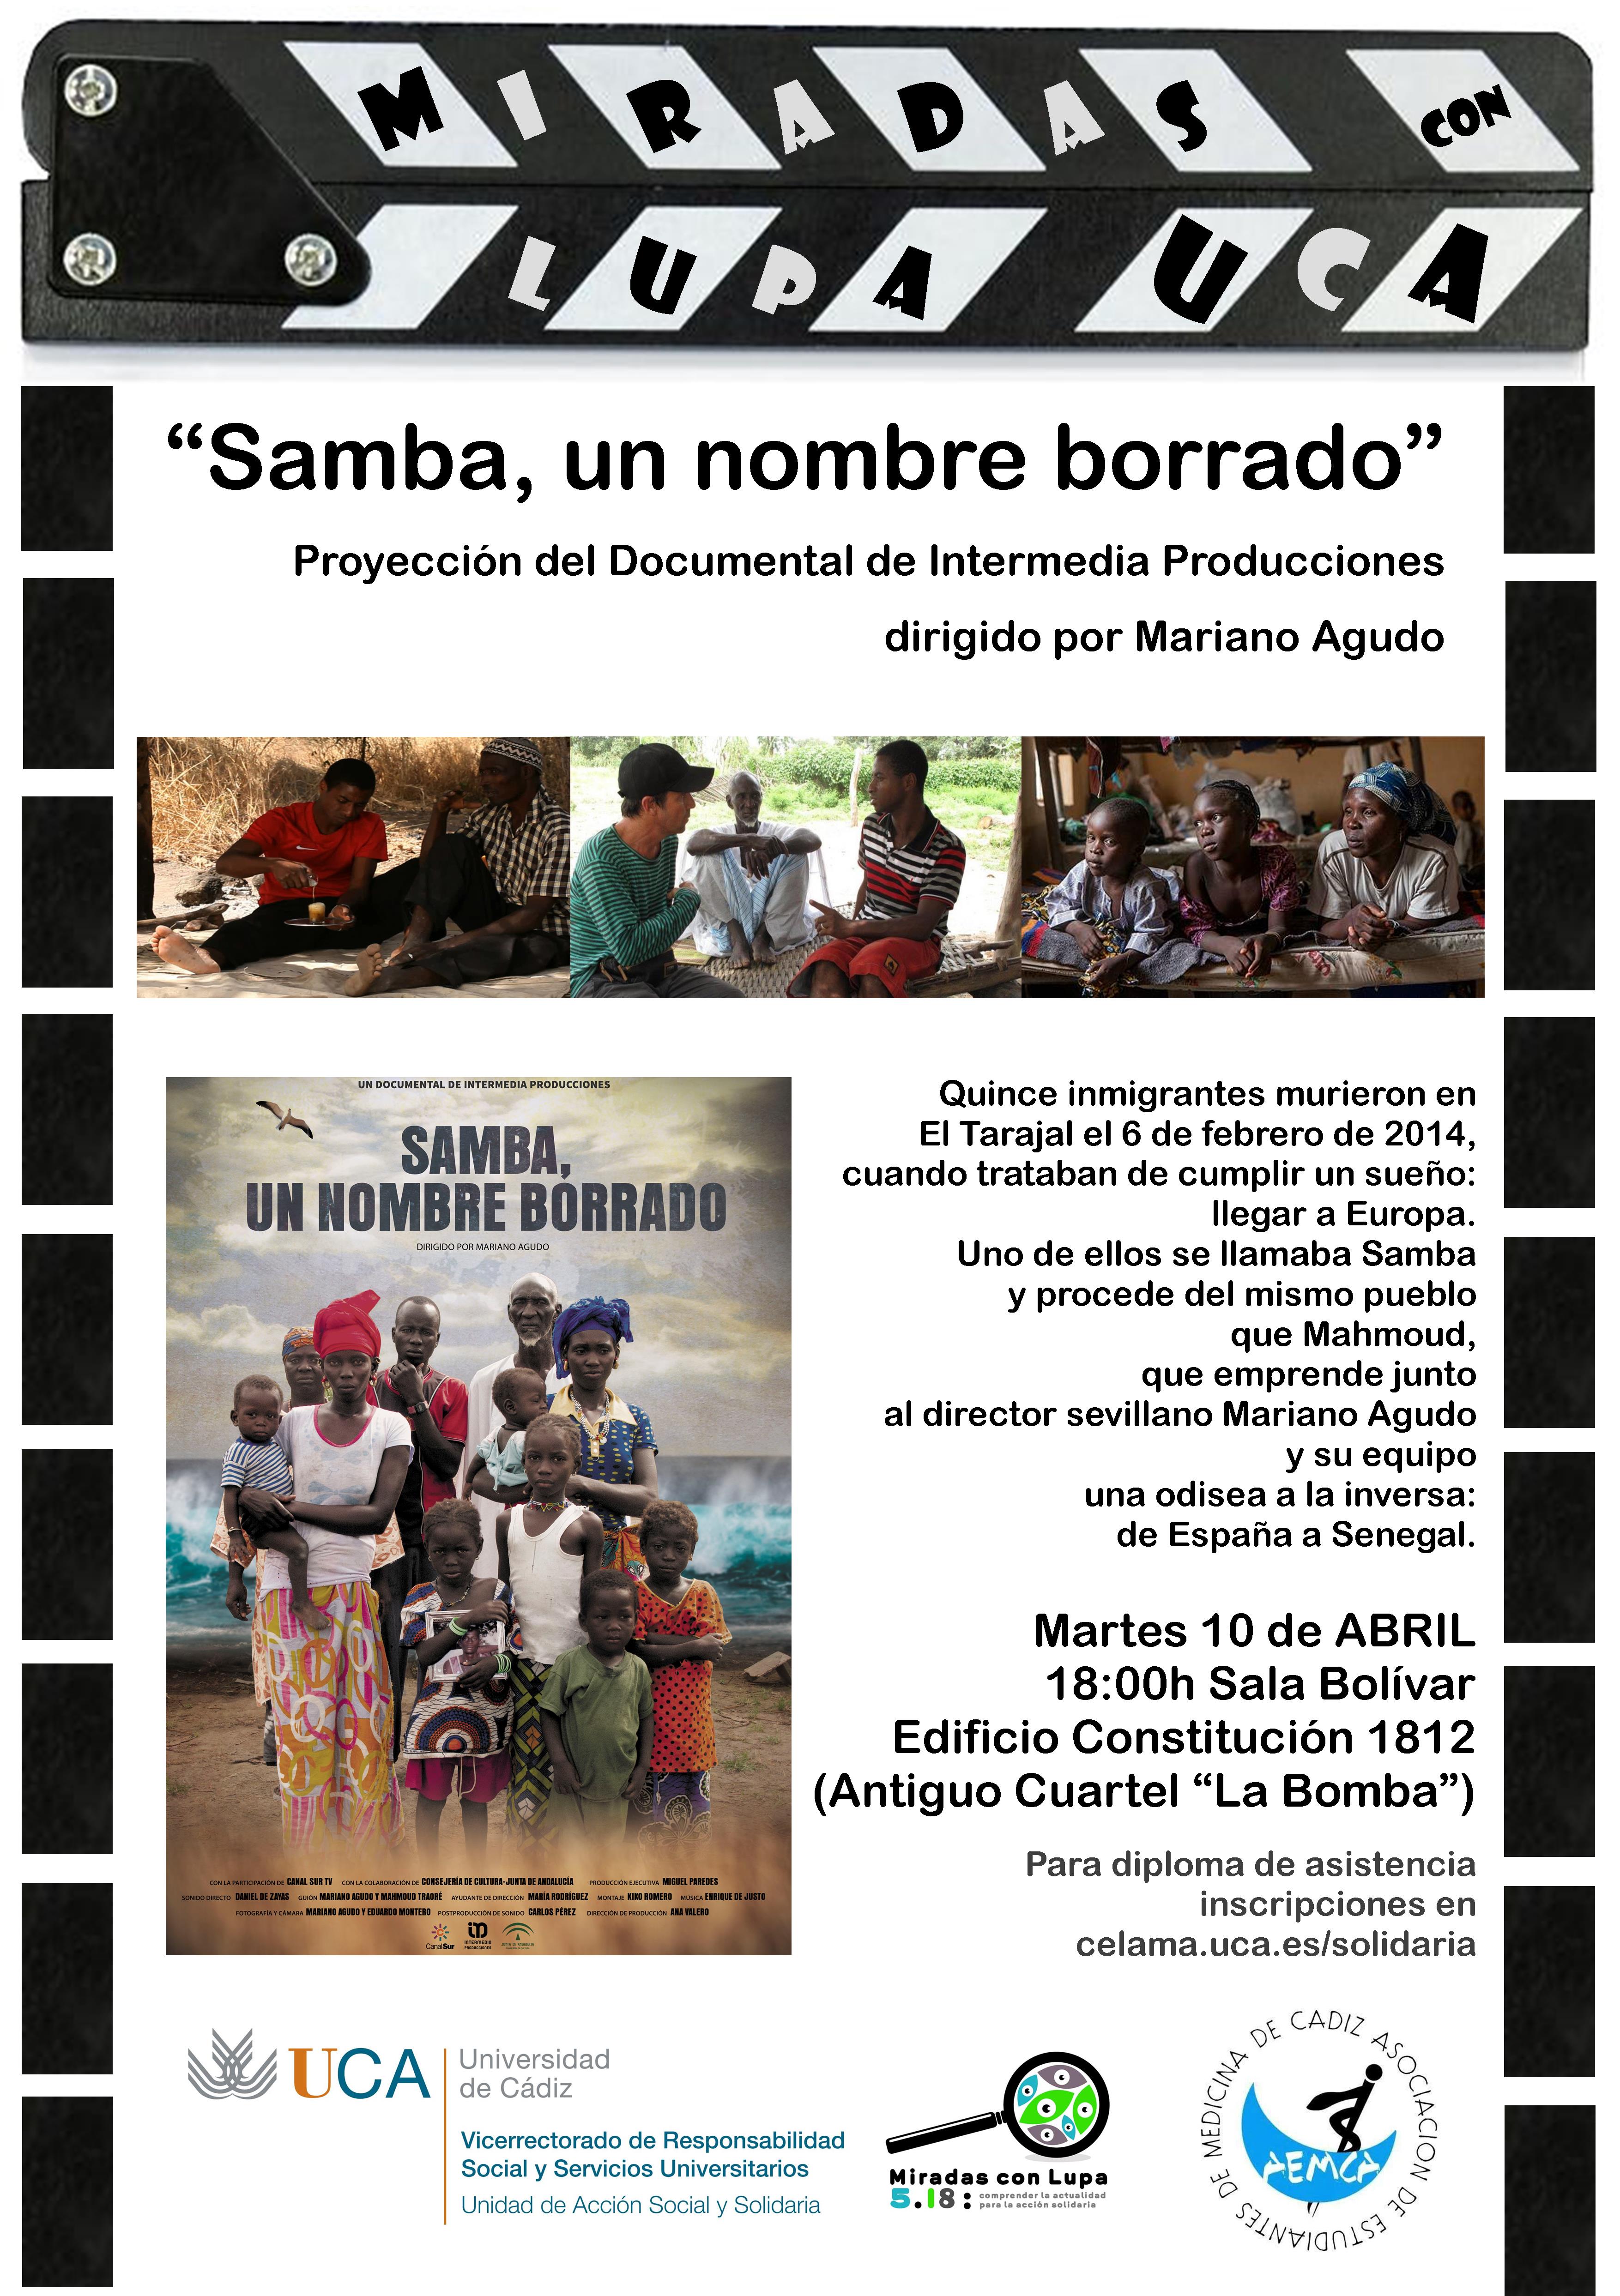 10 de abril. 18h. Proyección del Documental: “Samba, un nombre borrado”.